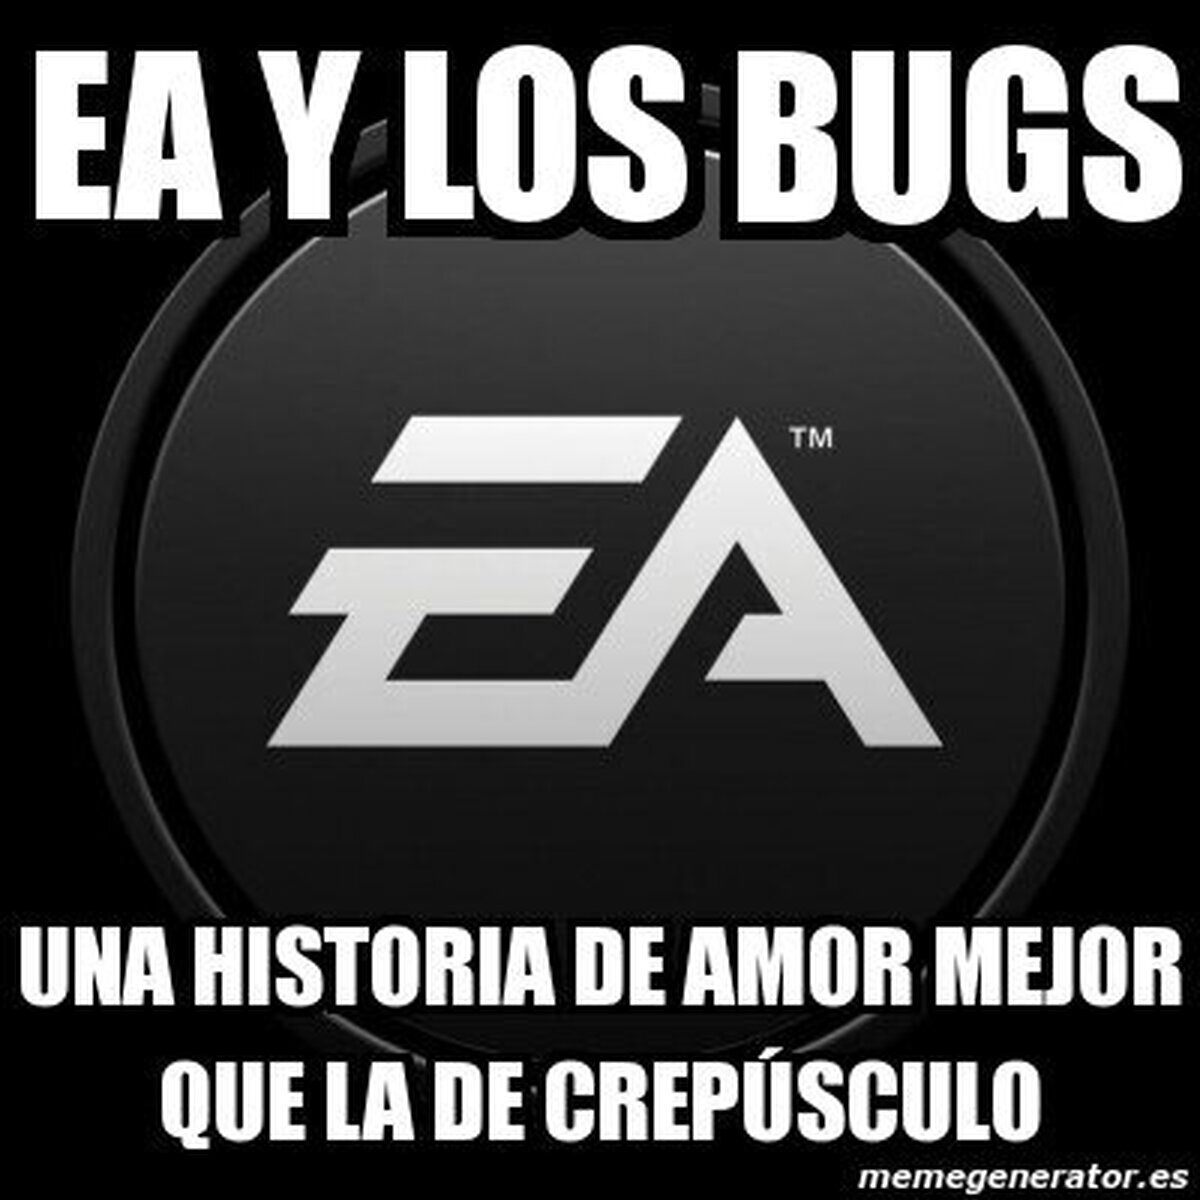 Ya sabemos el amor platónico de EA...